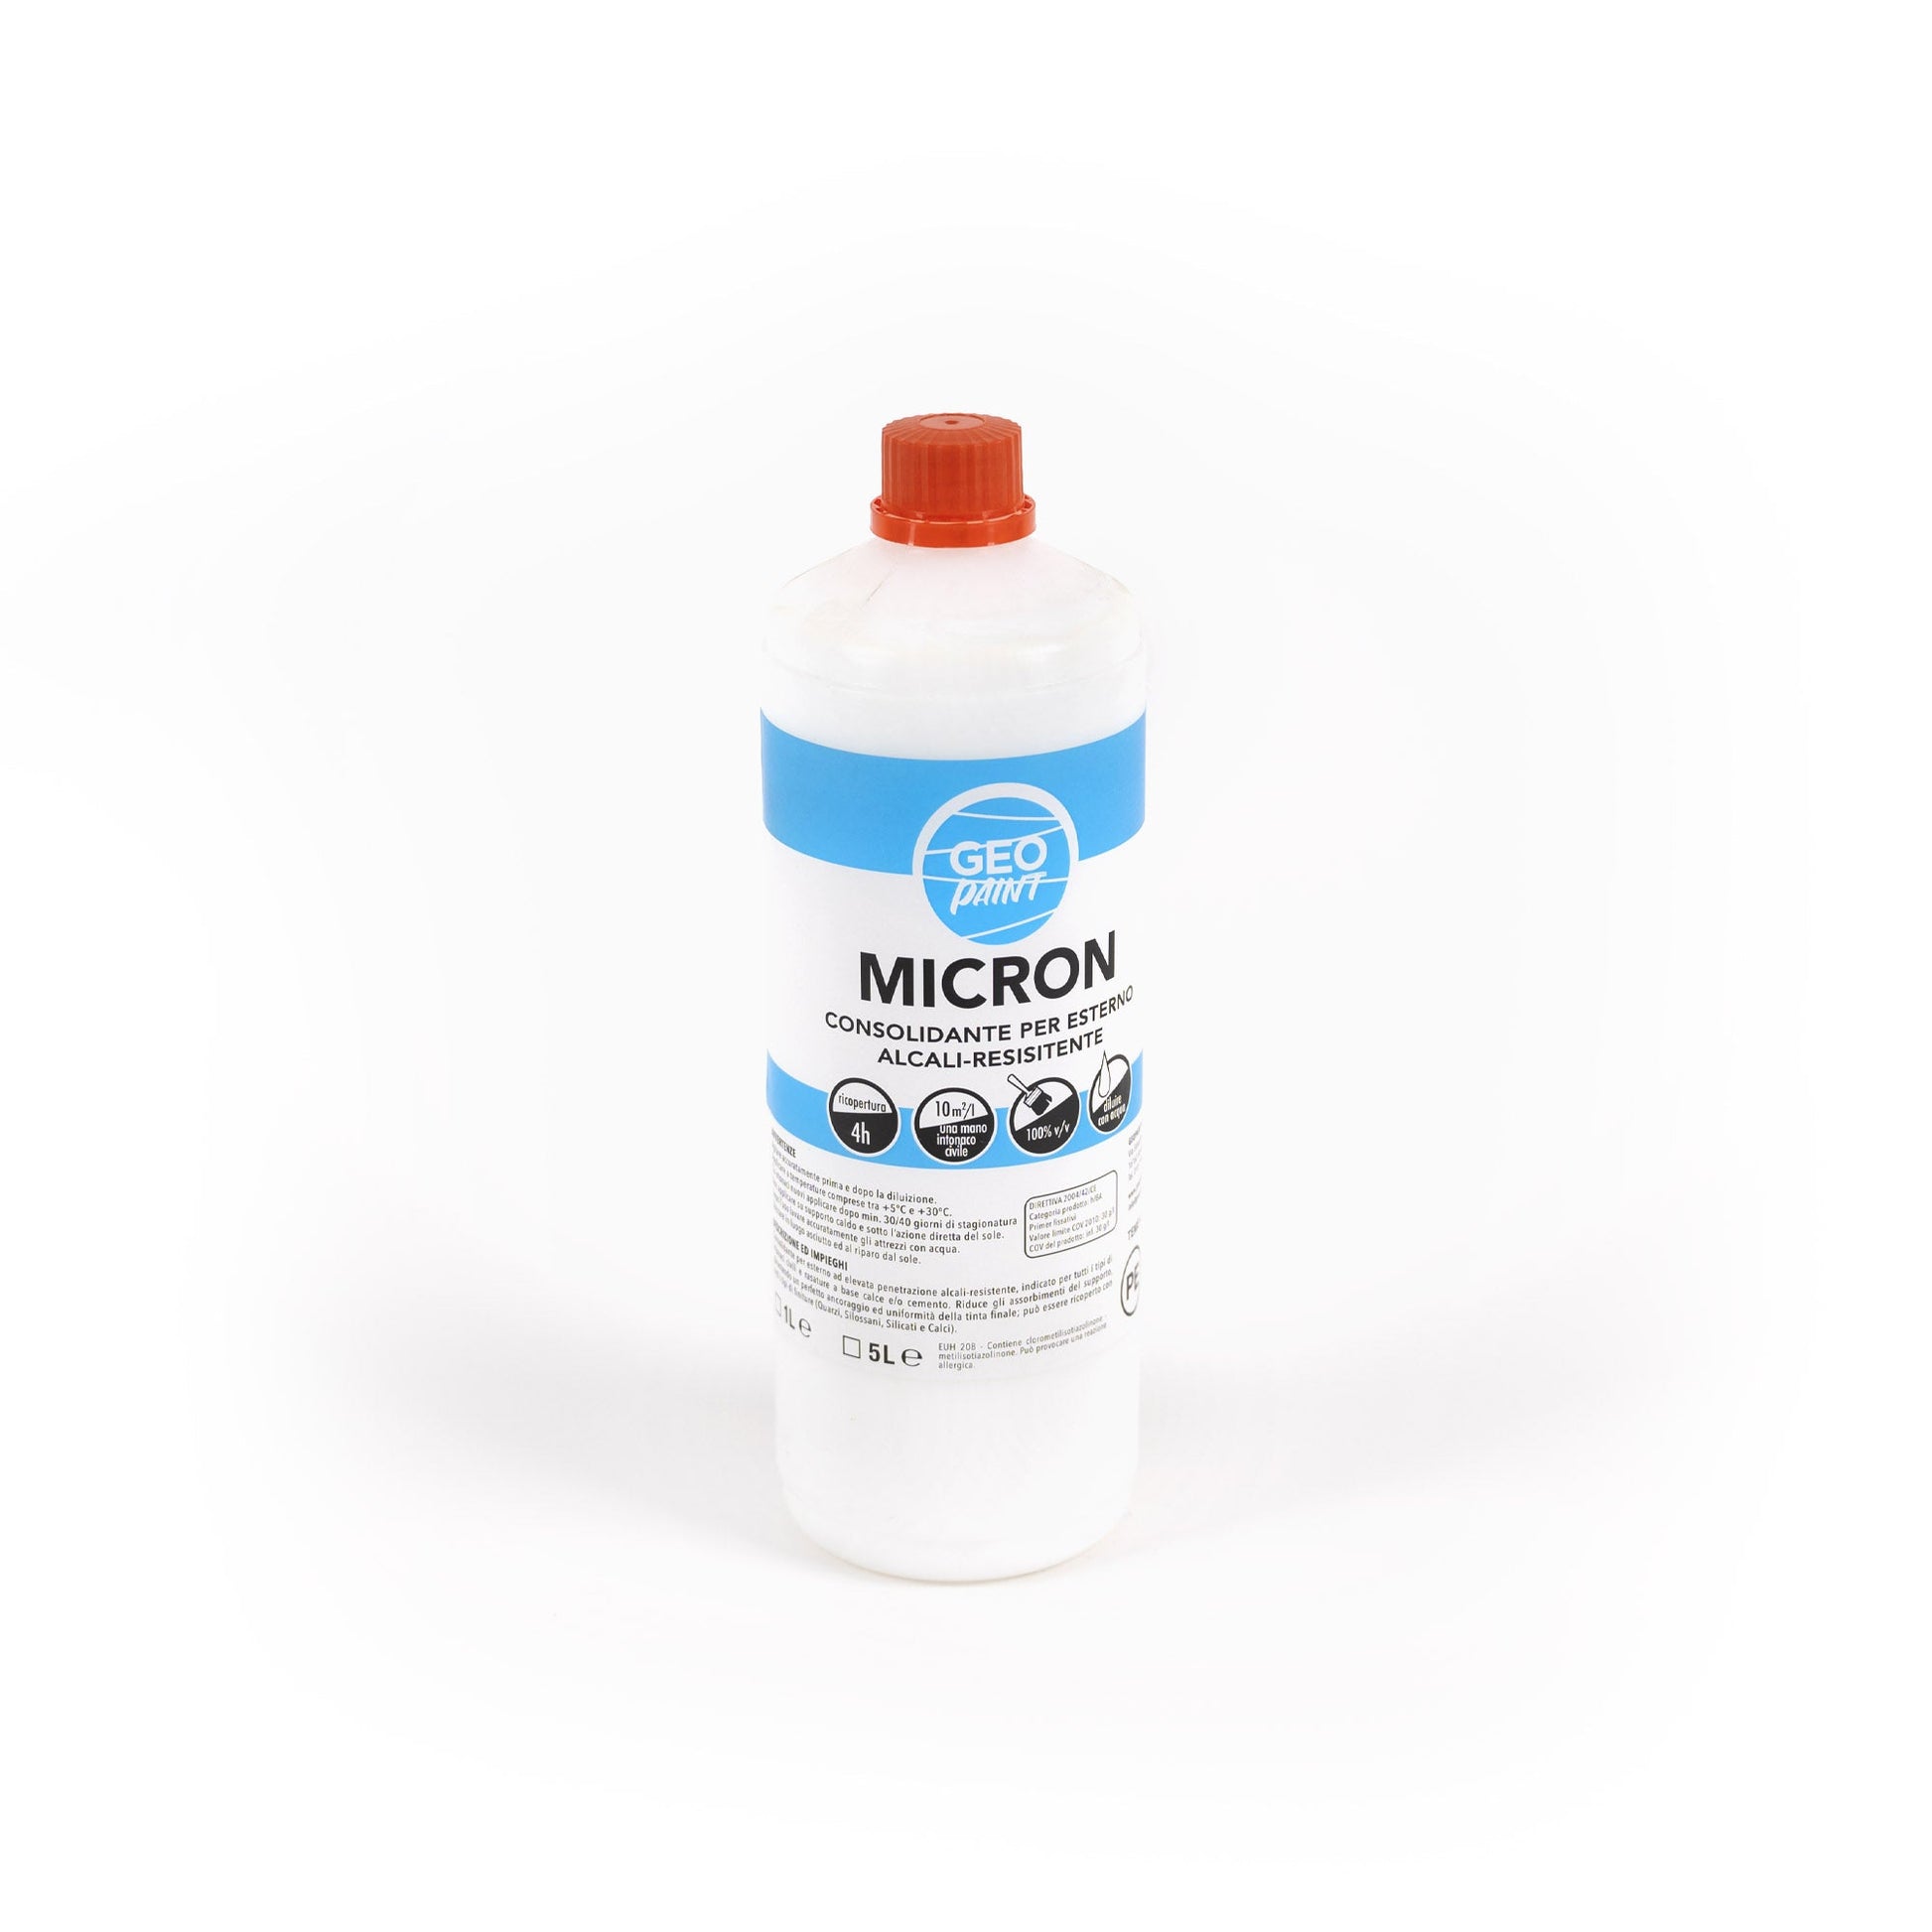    Micron-Fissativo-consolidante-per-esterno-colorificio-GeoPaint